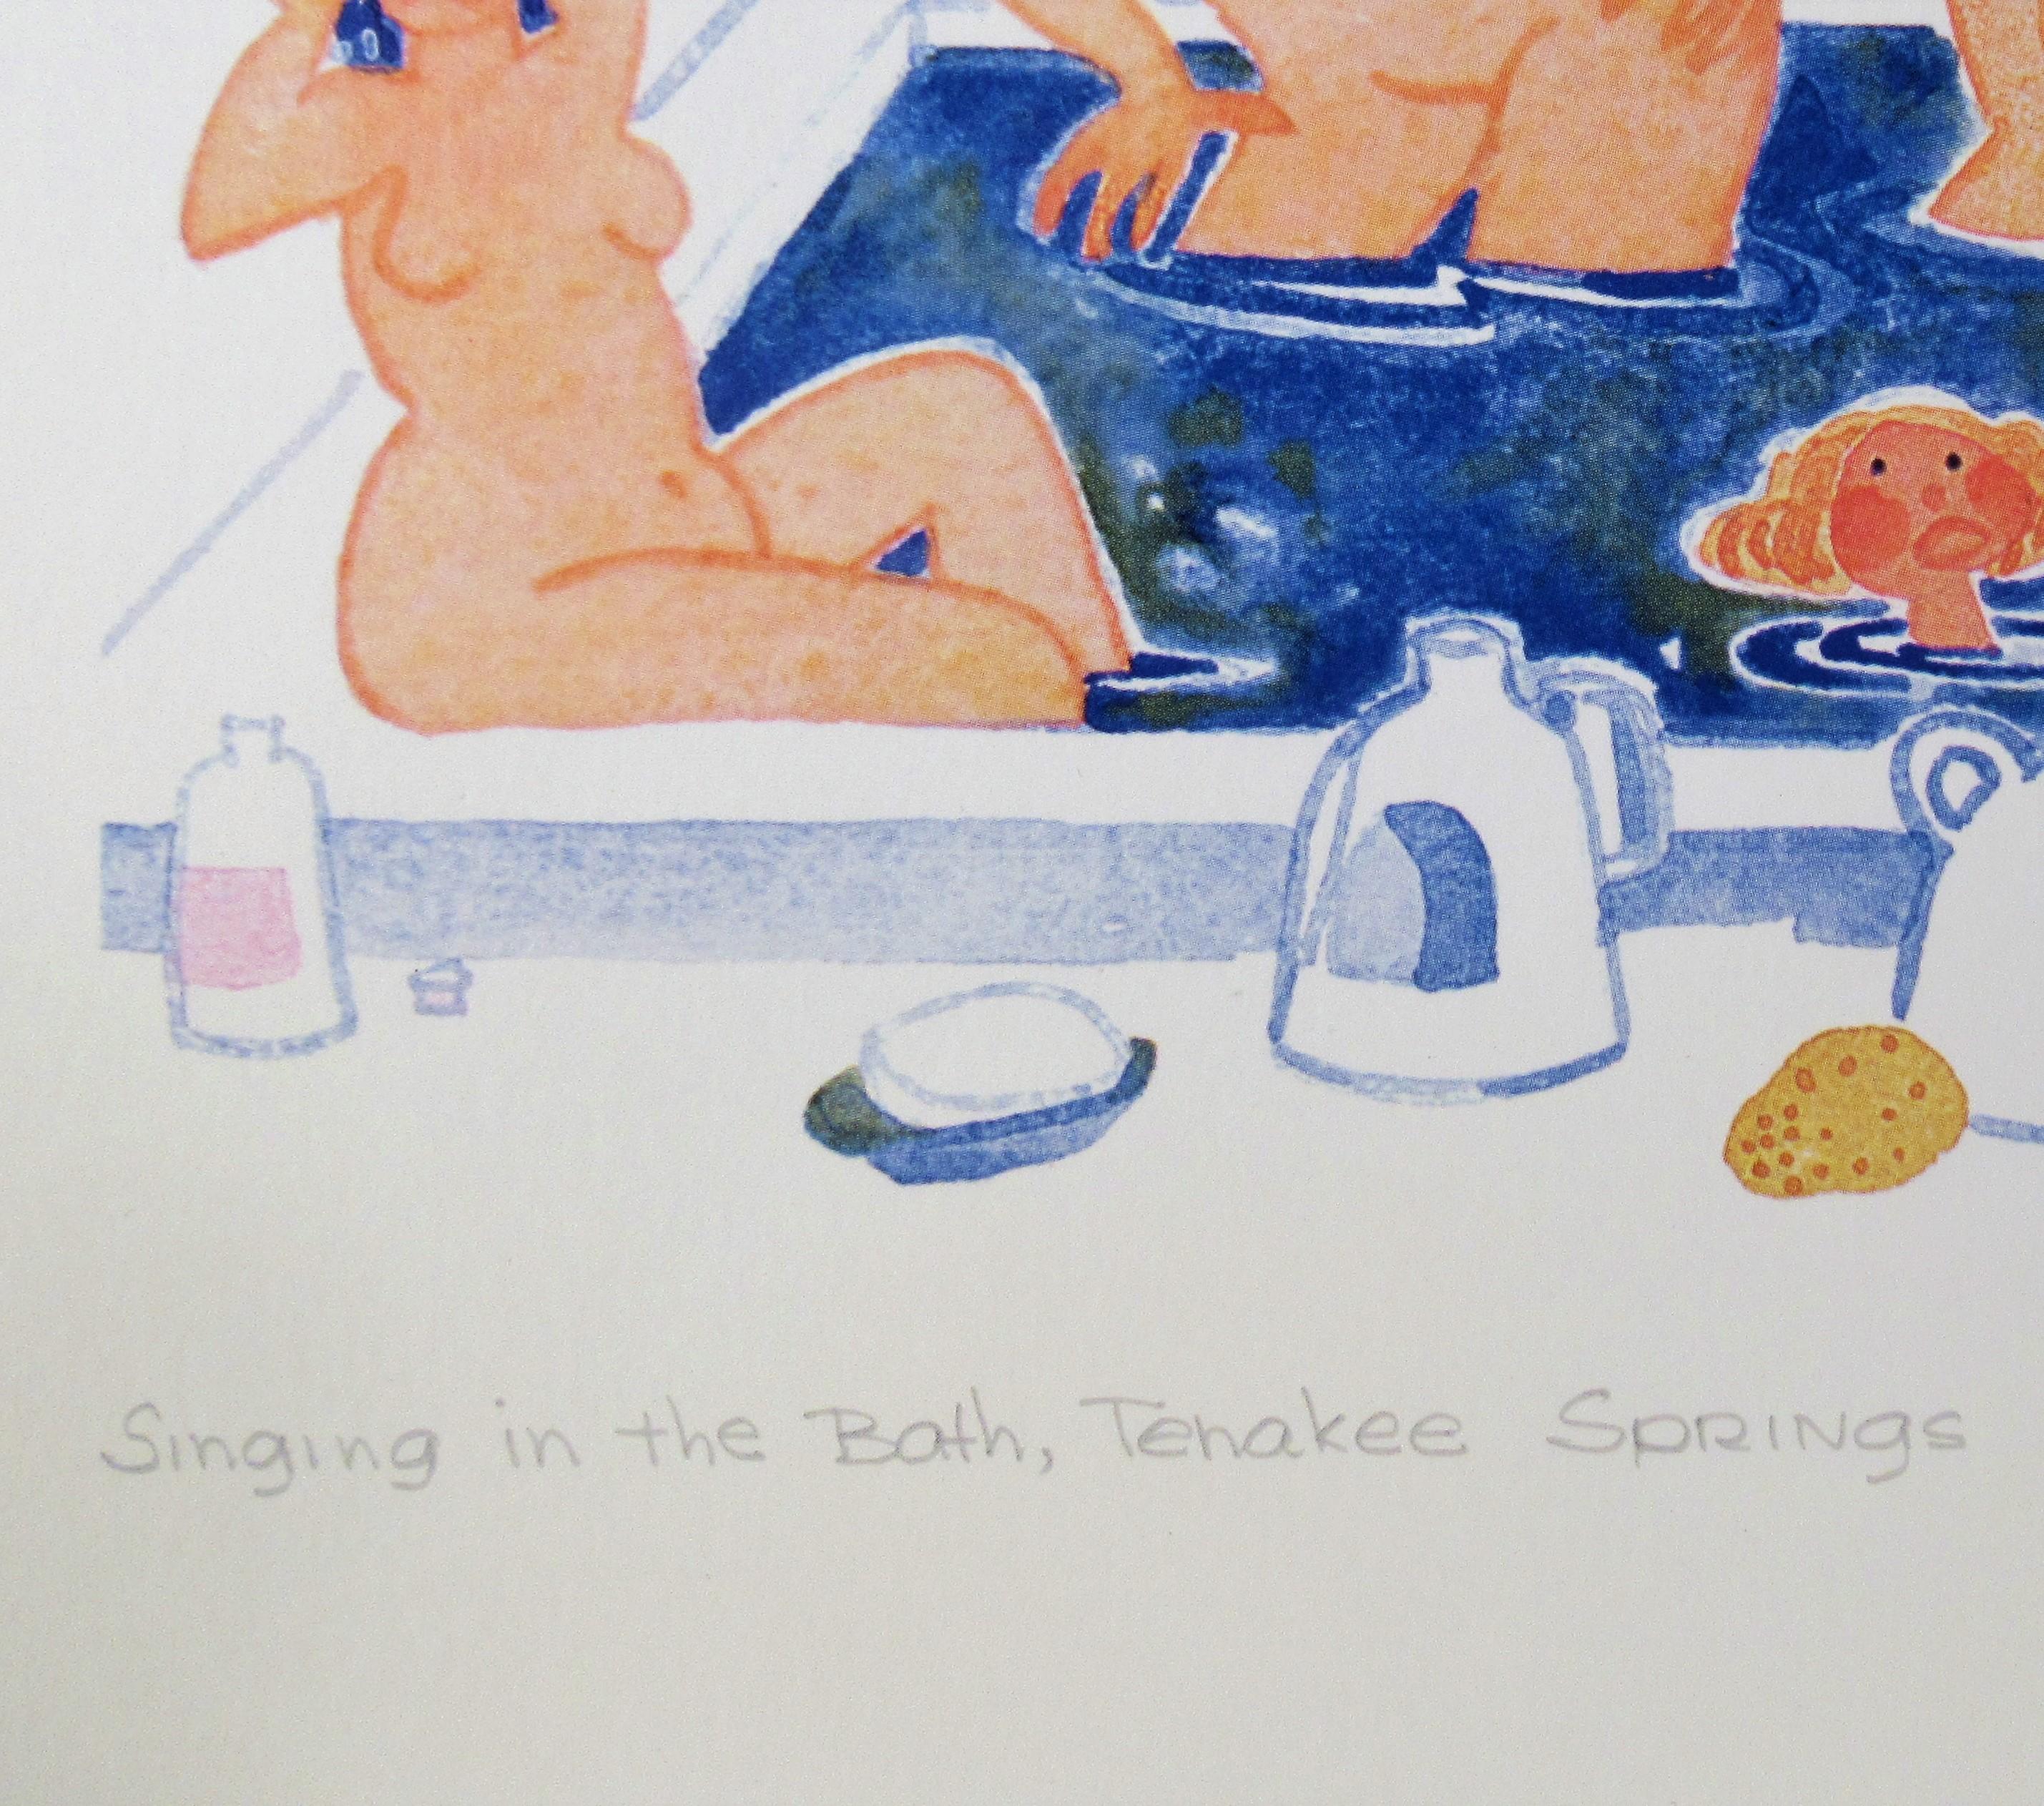 Singing in the Bath, Tenakee Springs im Angebot 2